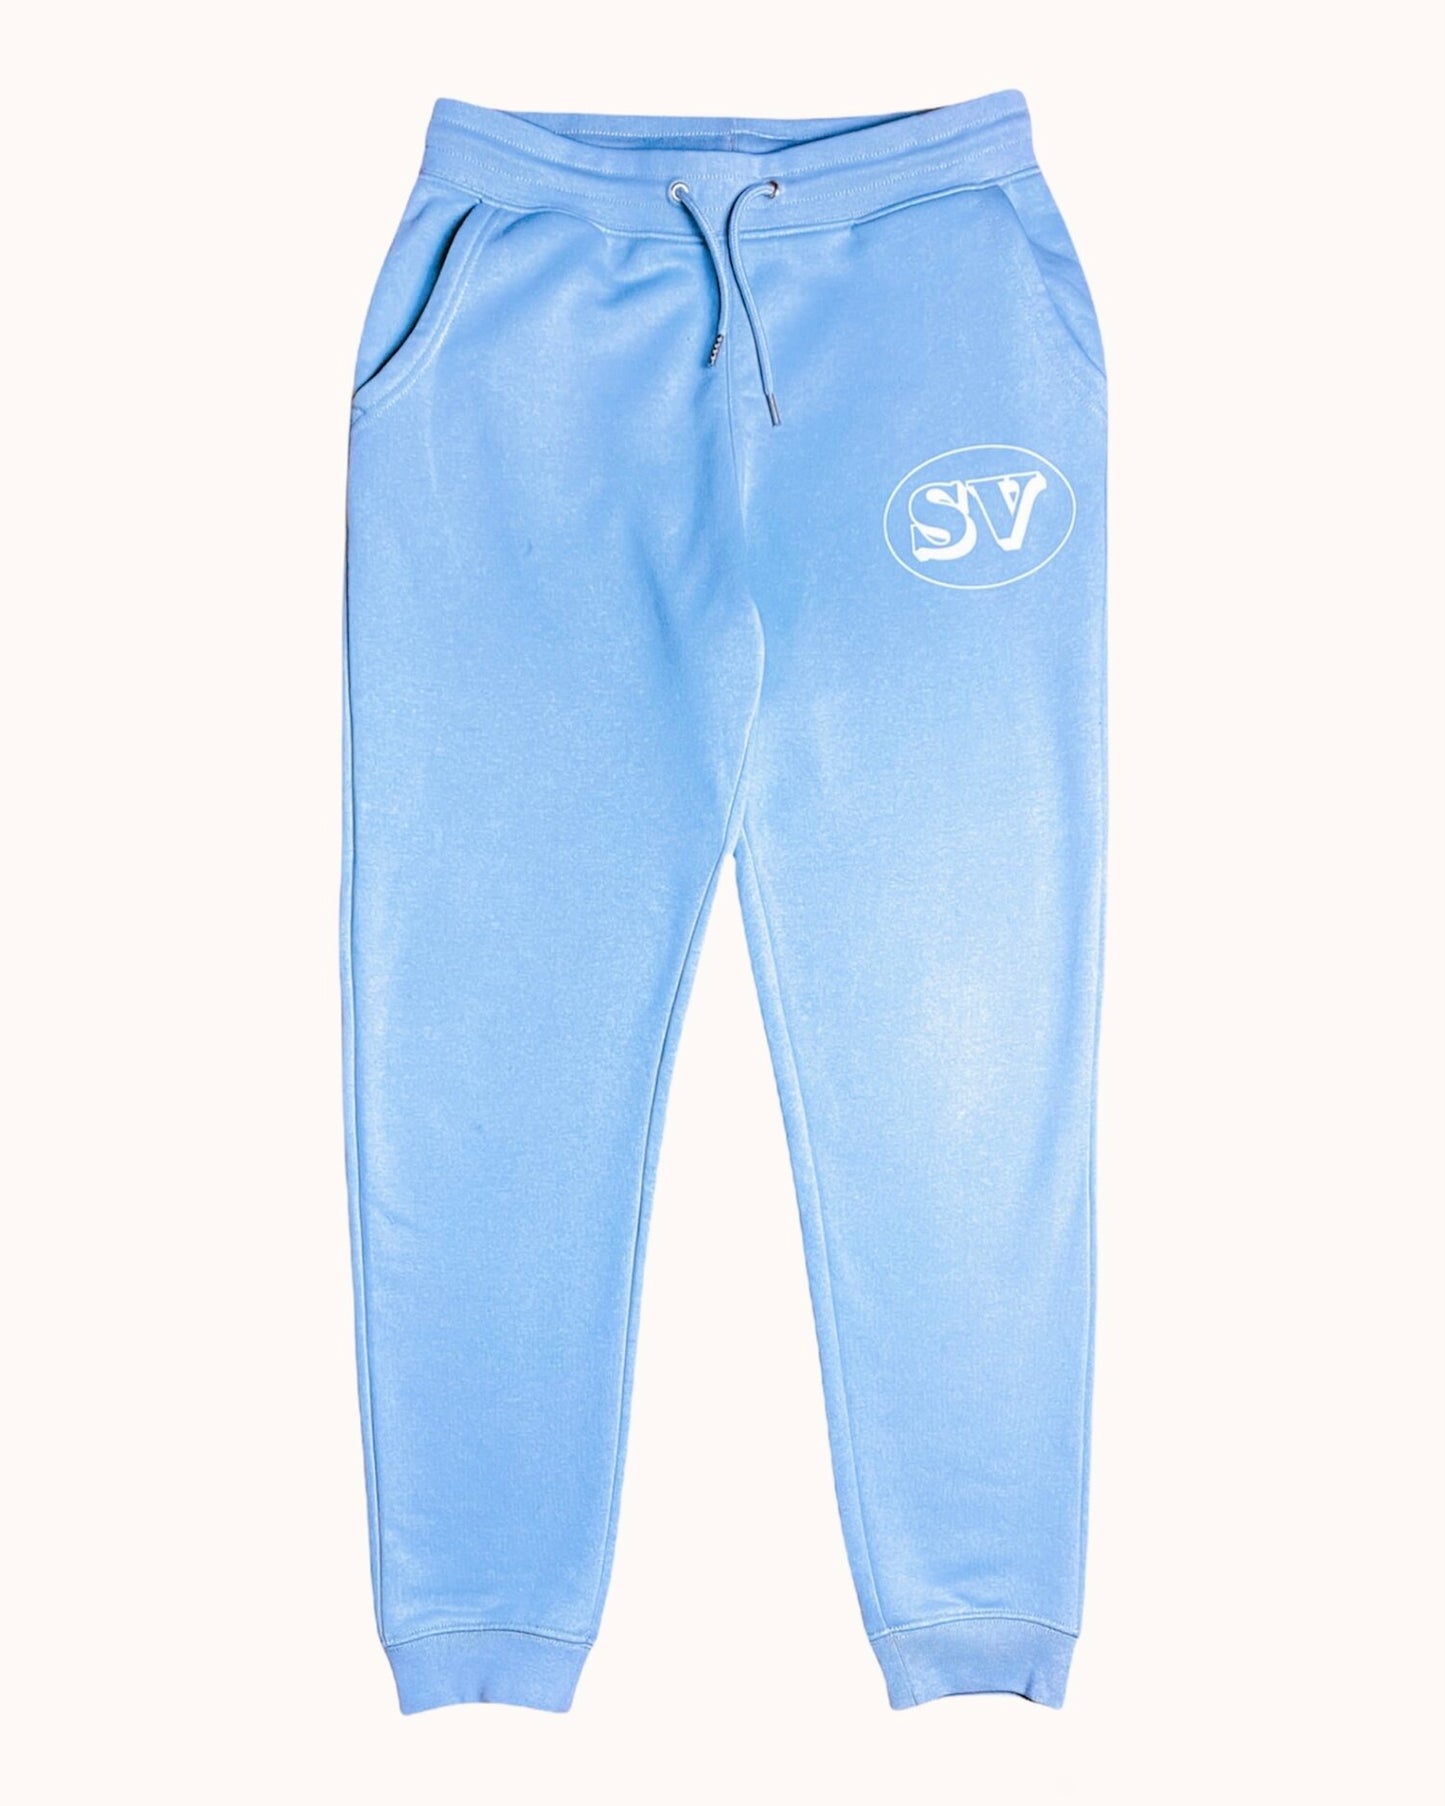 SV Bubble Sweatpants - Baby Blue